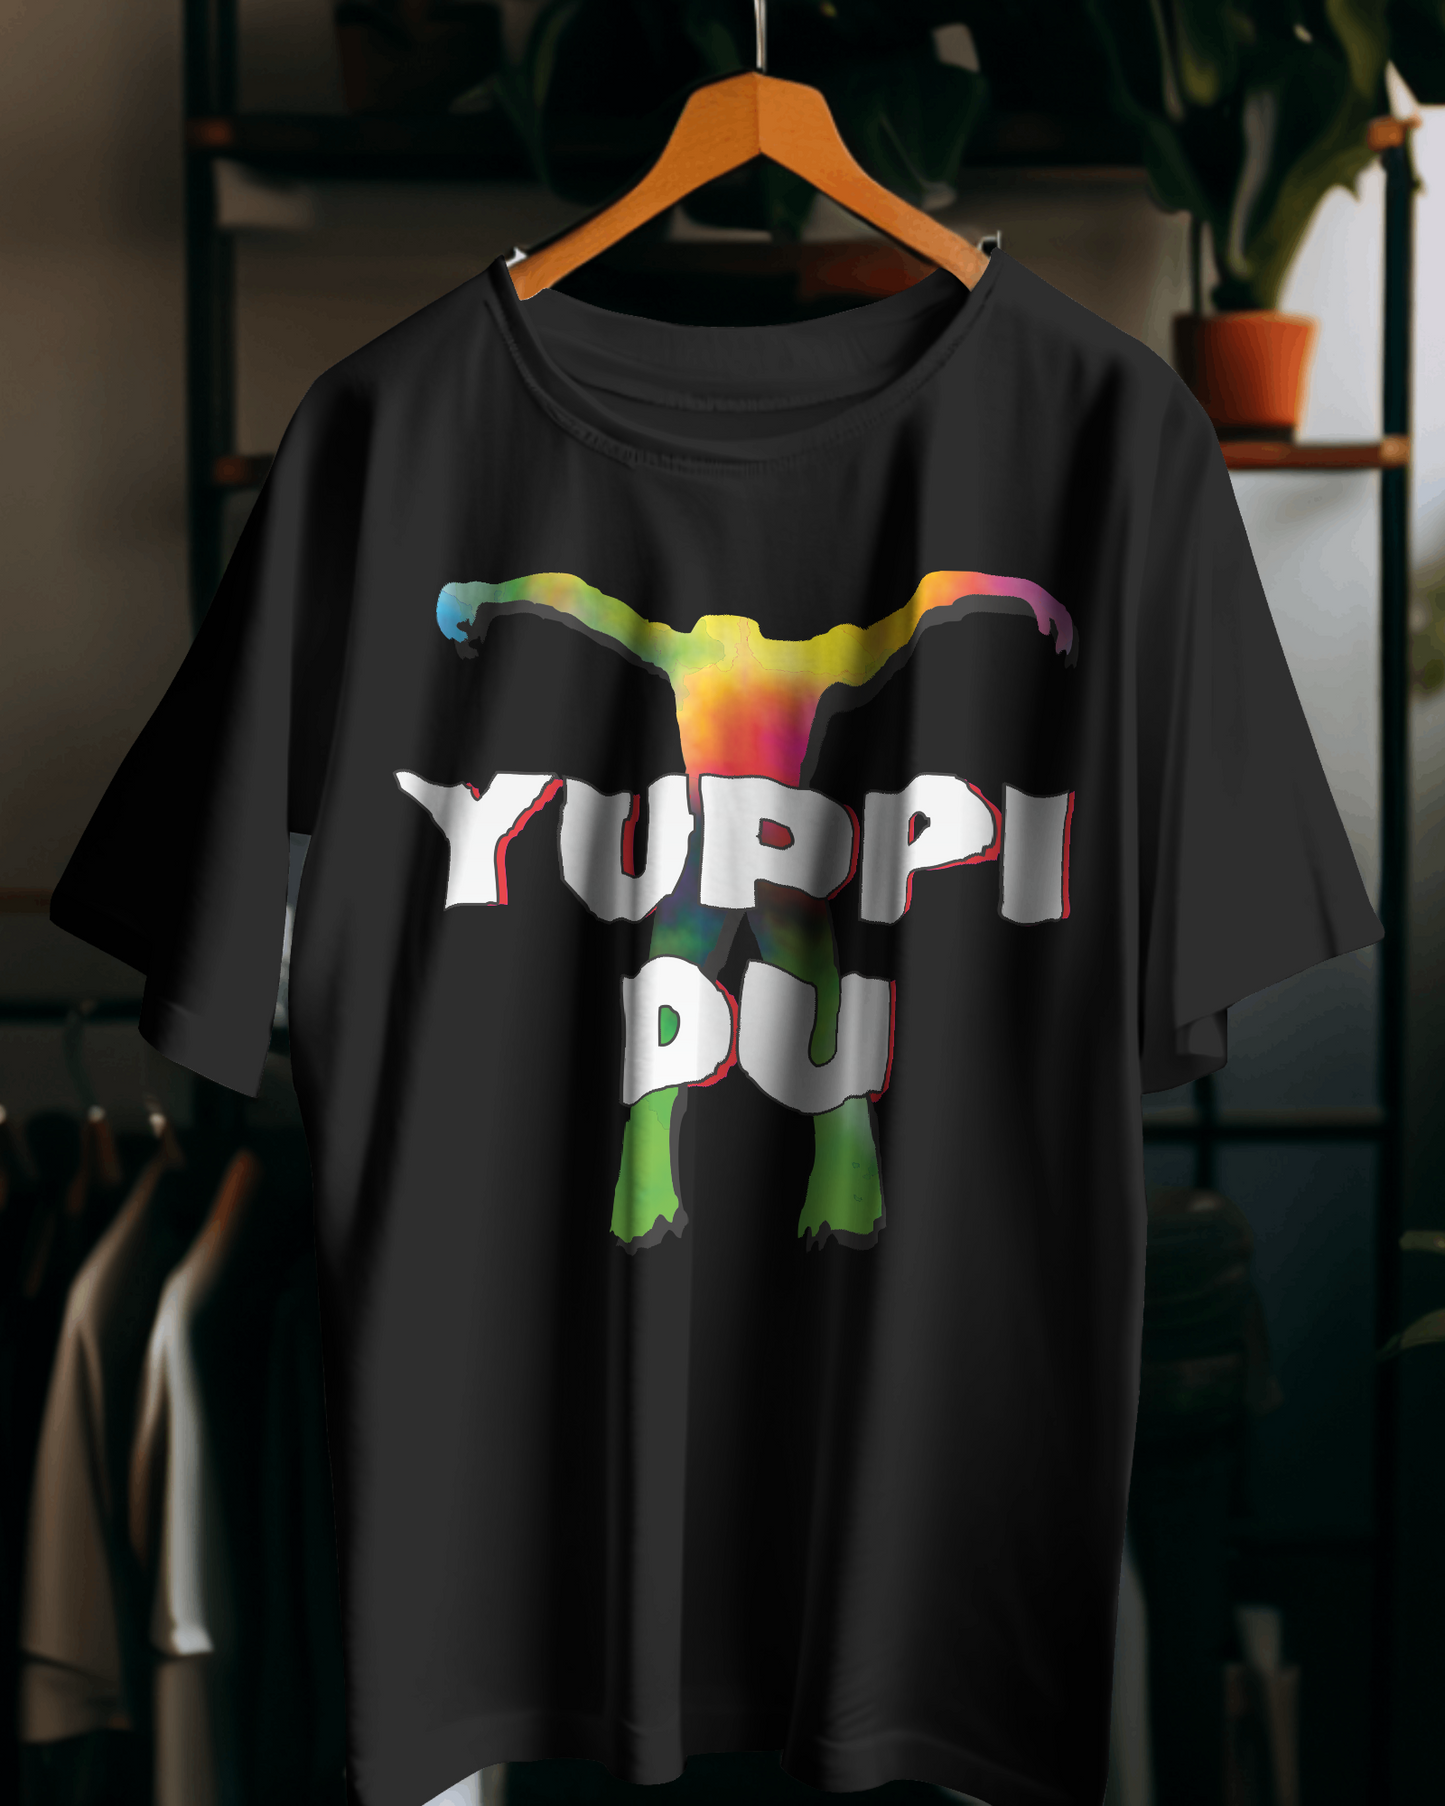 Maglietta unisex 100% cotone organico con stampa YUPPIDU